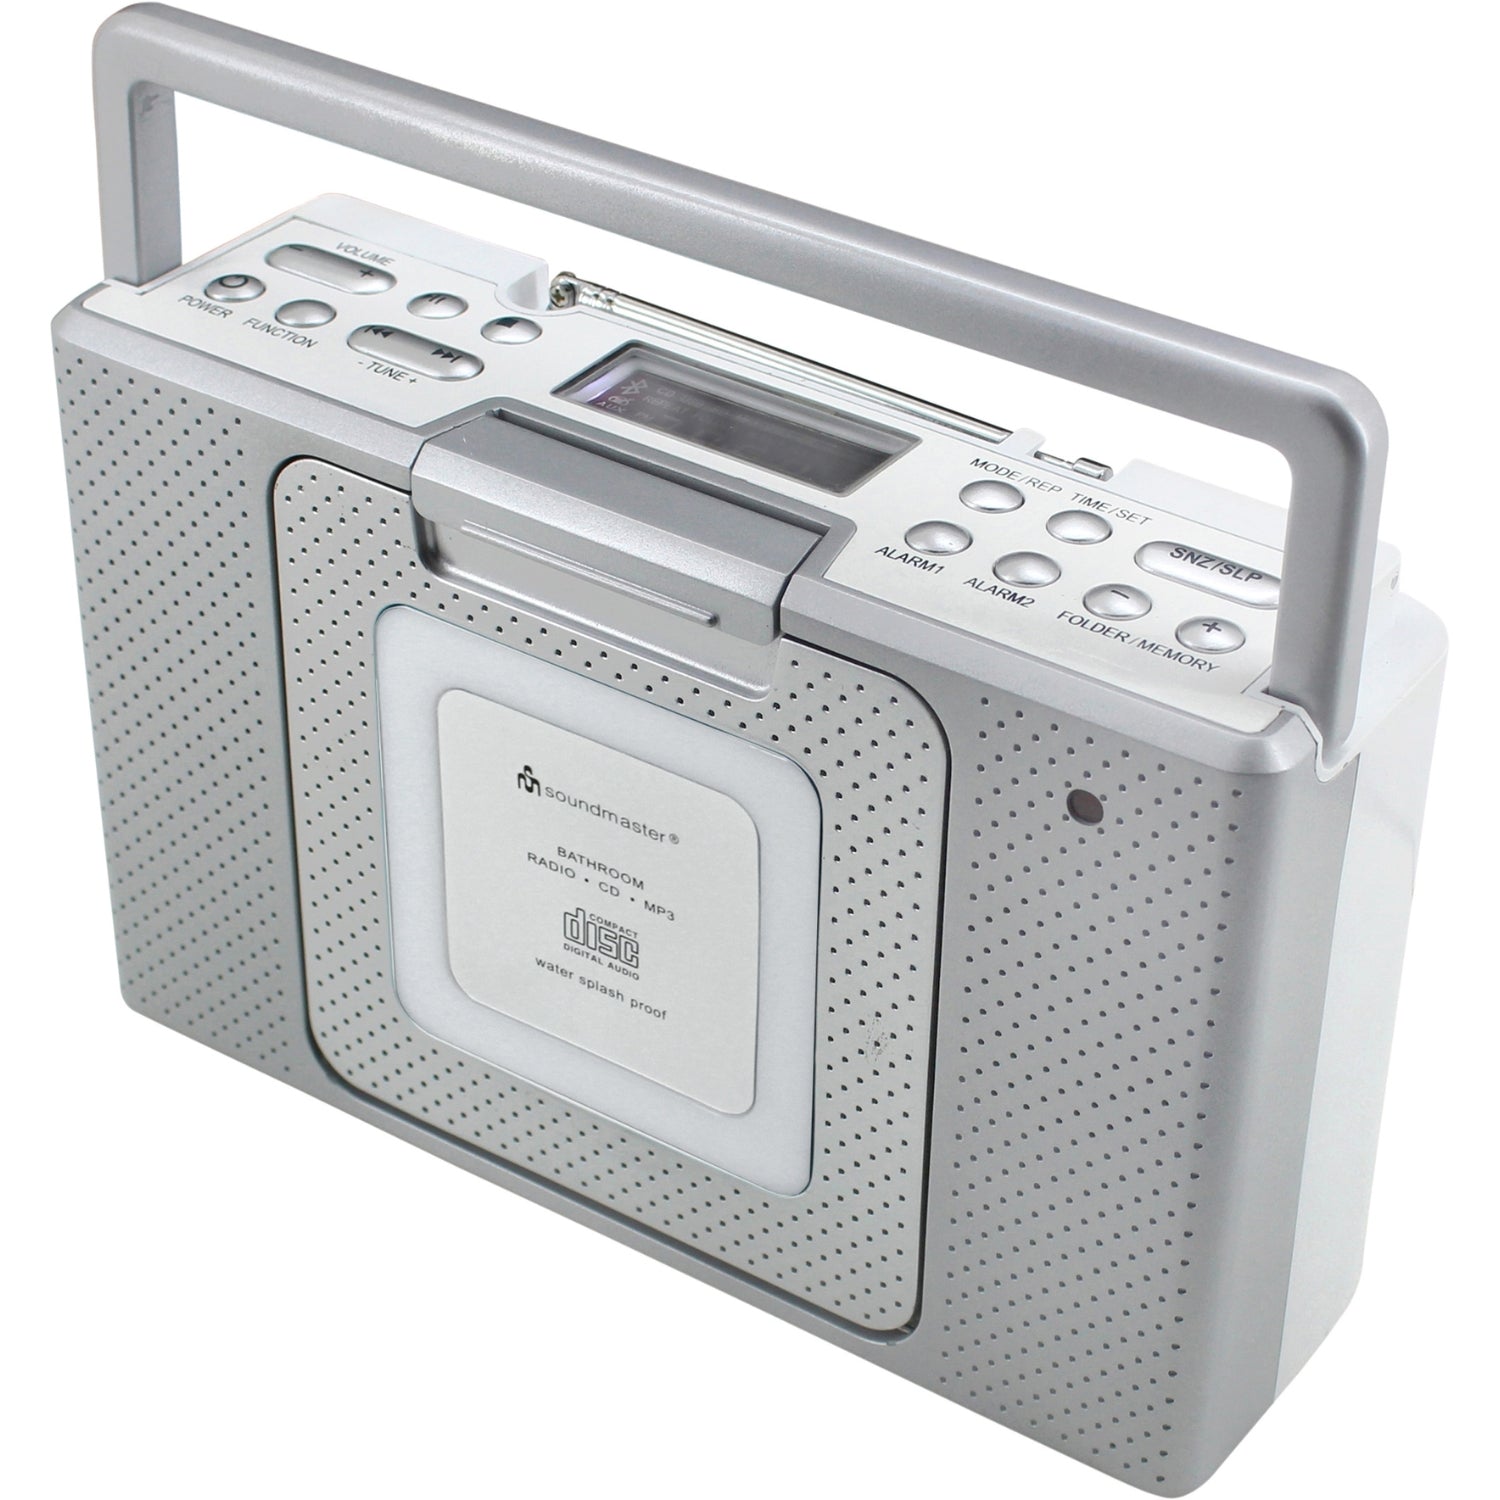 Soundmaster BCD480 Badezimmerradio Küchenradio CD-Player Stereolautsprecher Uhrzeitanzeige IPX4 spritzwassergeschützt